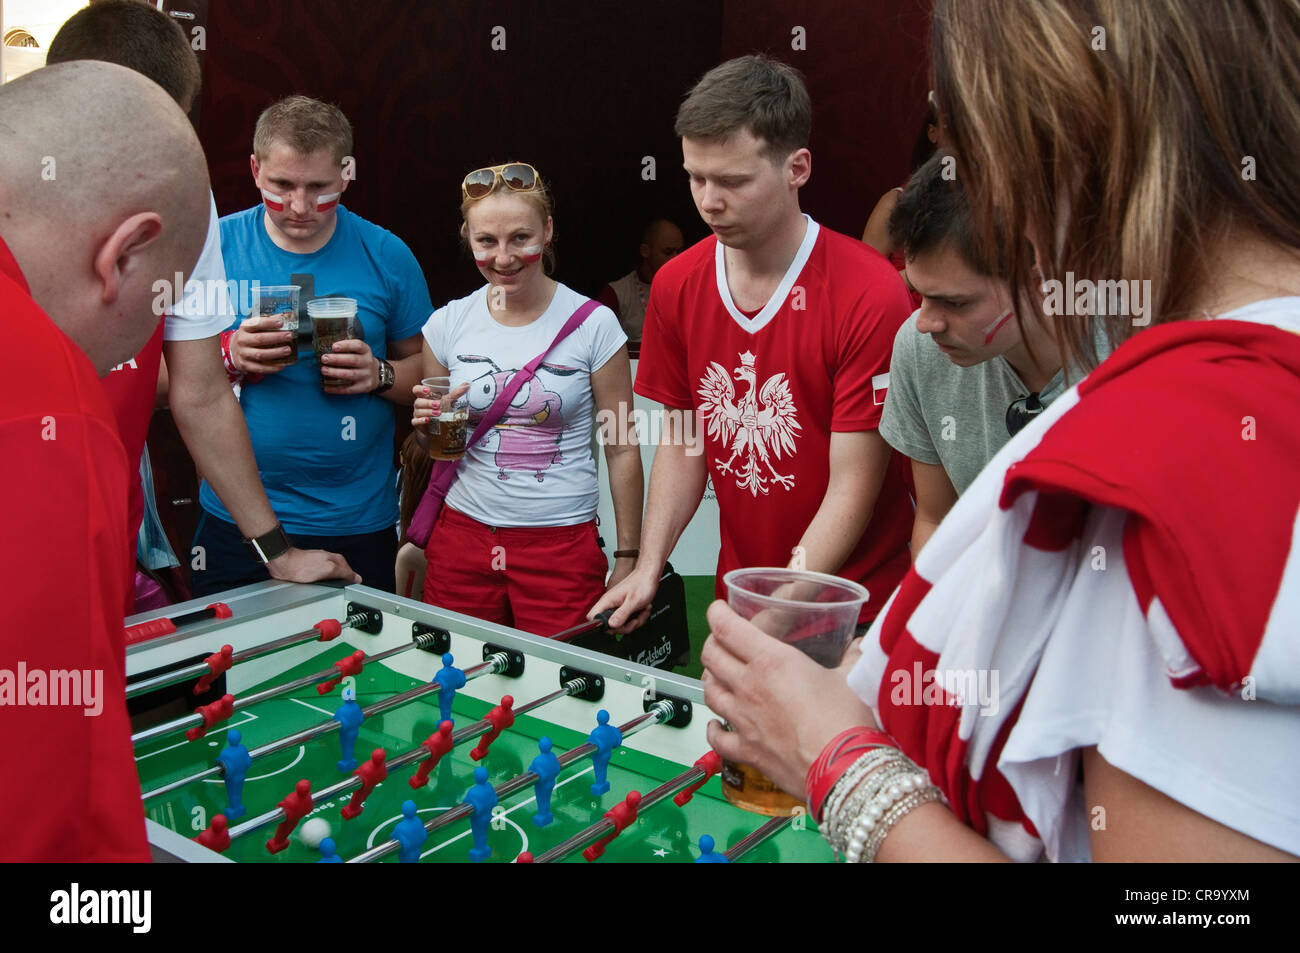 Soccer fans playing table football avant de regarder match pendant l'EURO 2012 de football à Fan Zone à Wrocław, Pologne Banque D'Images